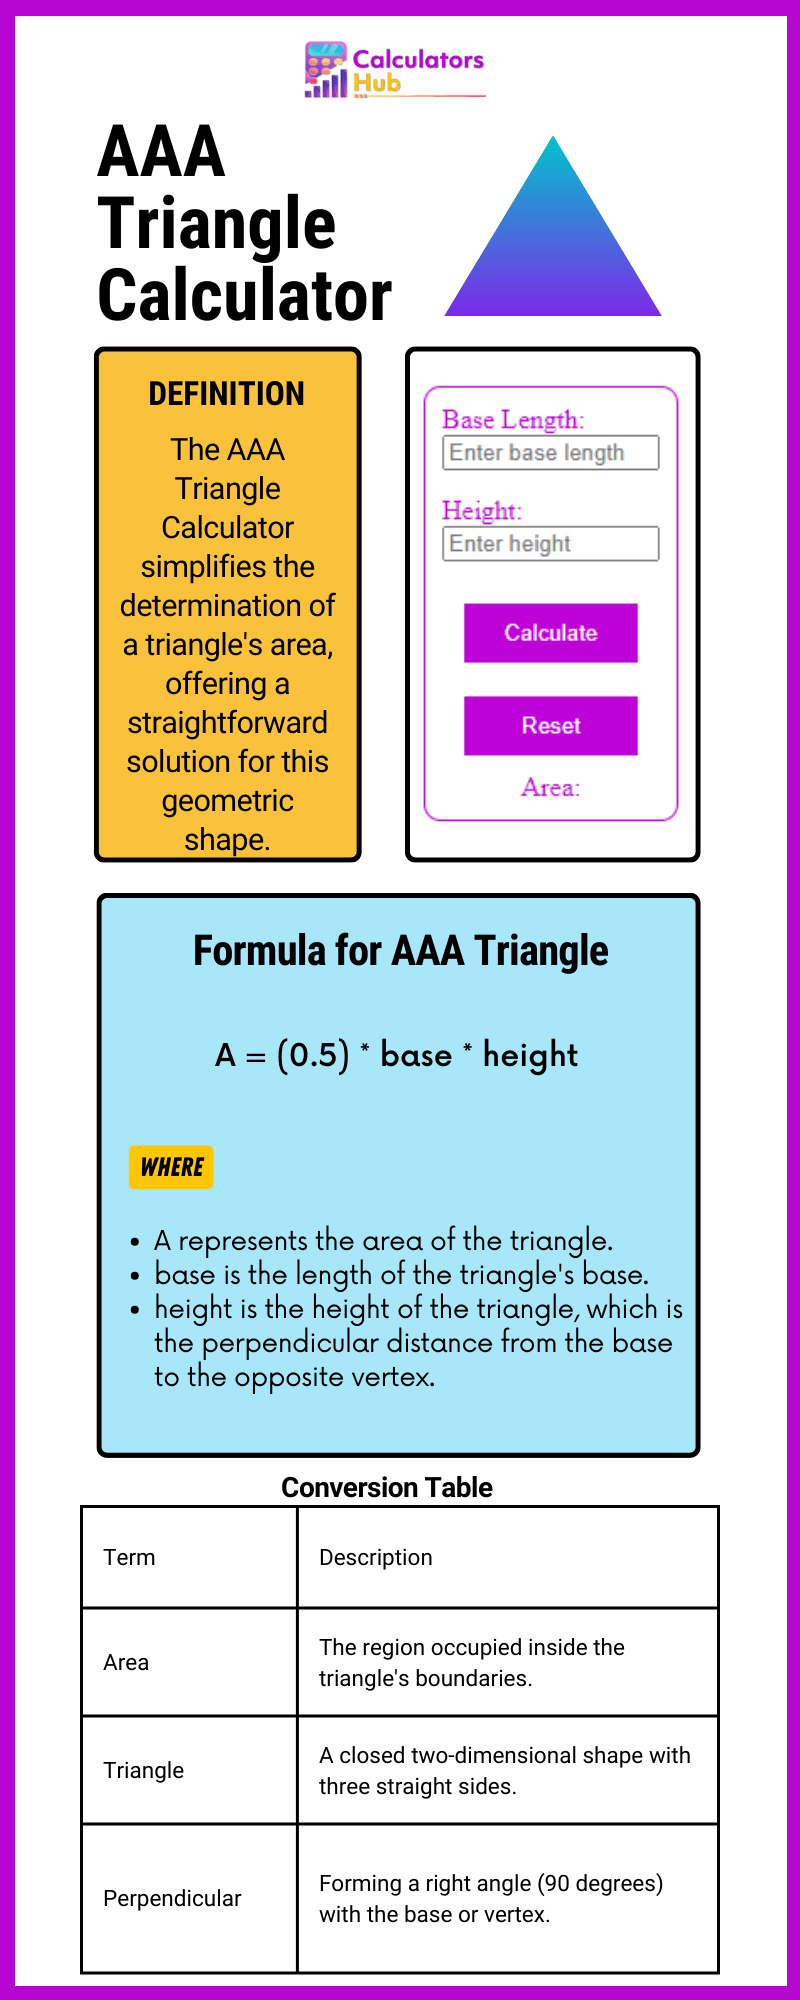 AAA Triangle Calculator